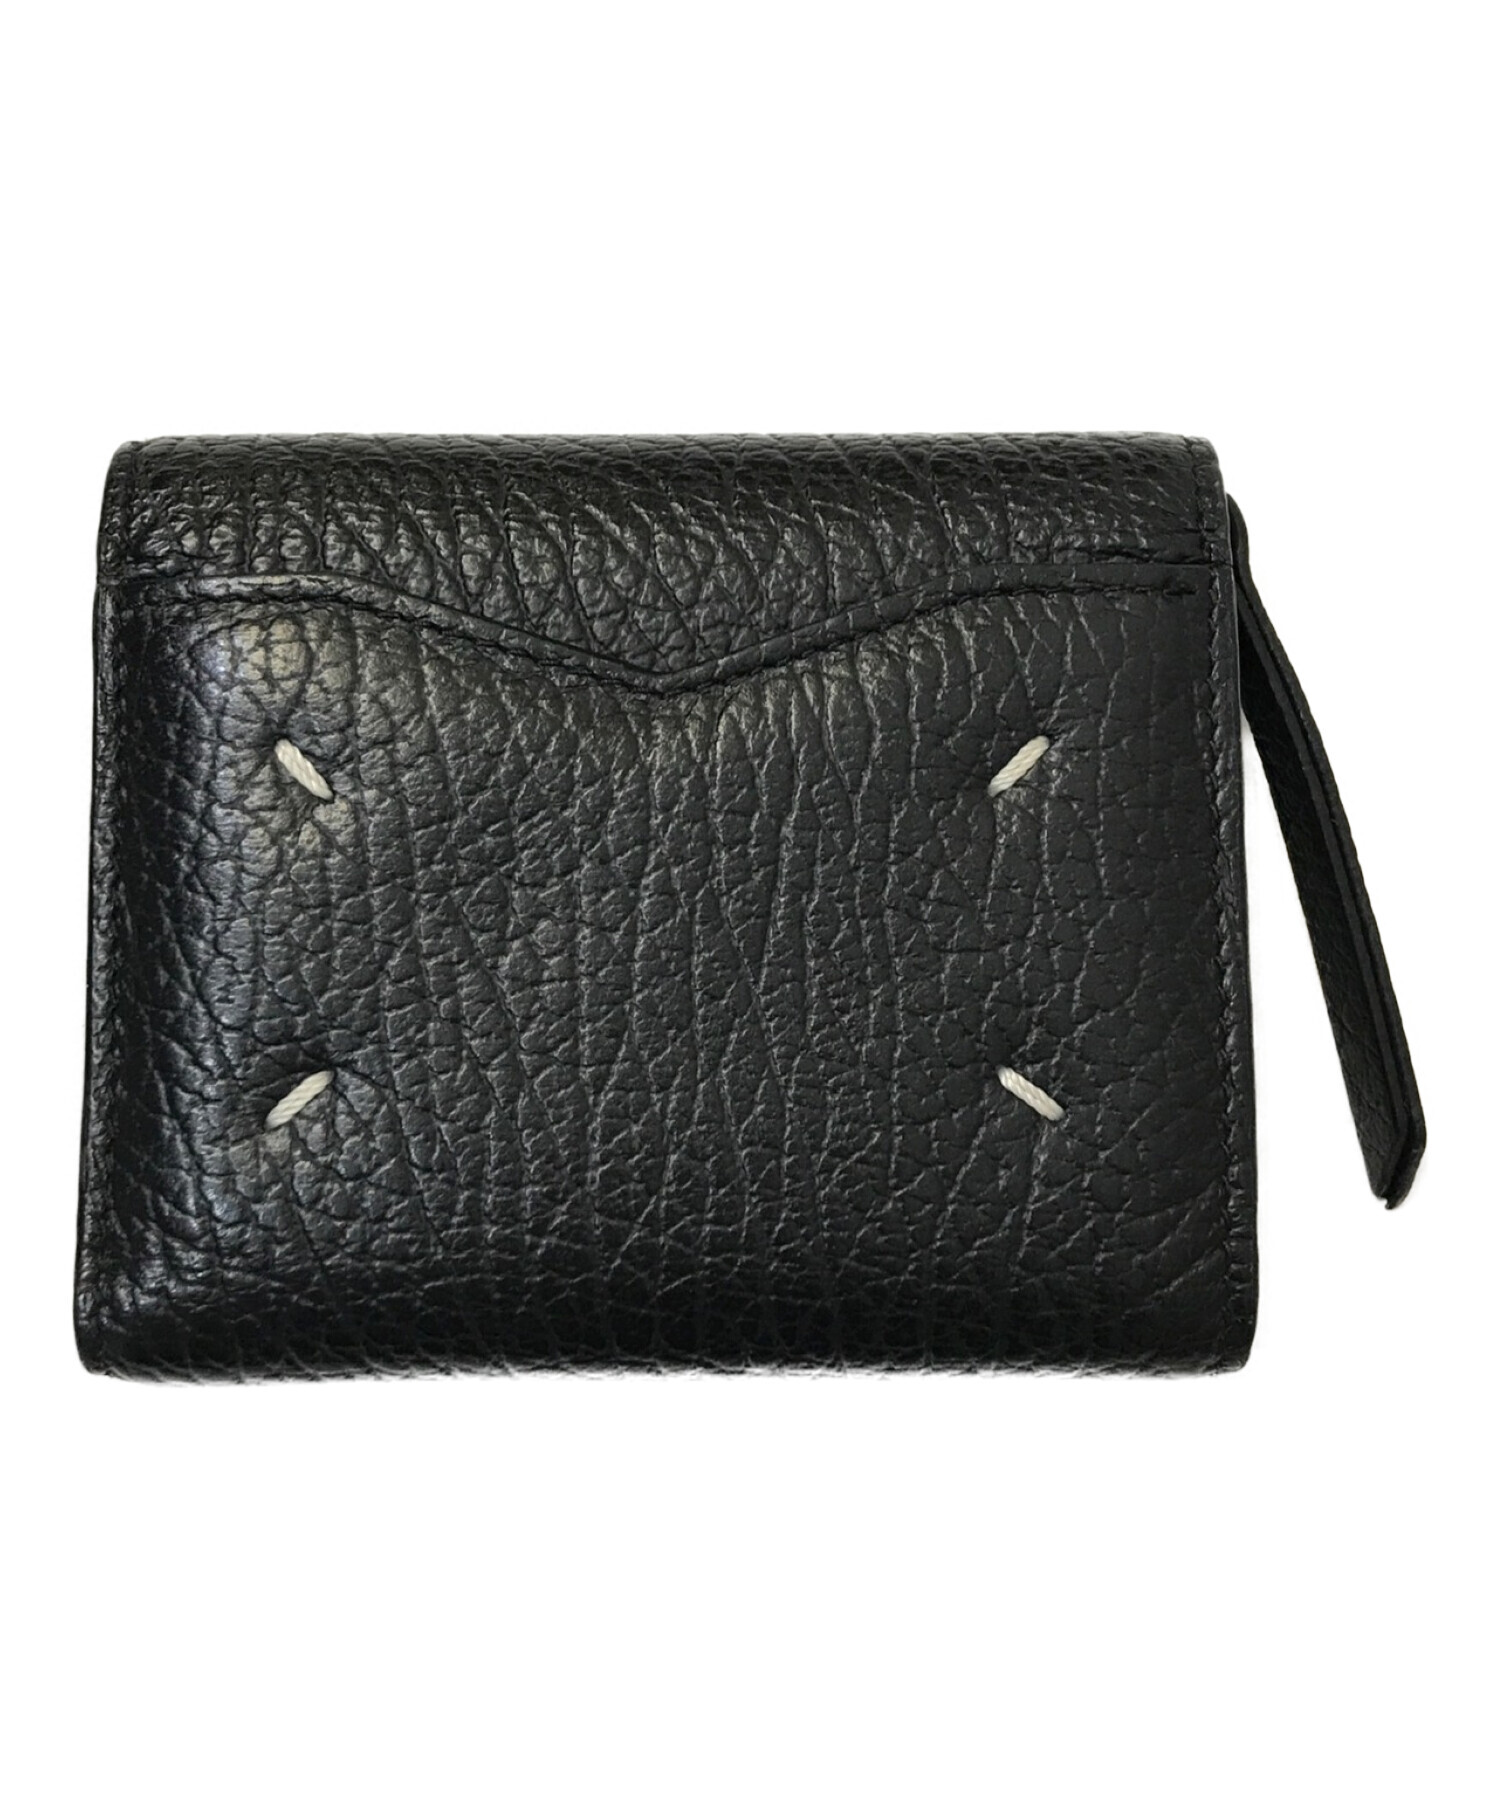 新品Maison Margiela ブラック -革の財布 メゾンマルジェラ - 小物